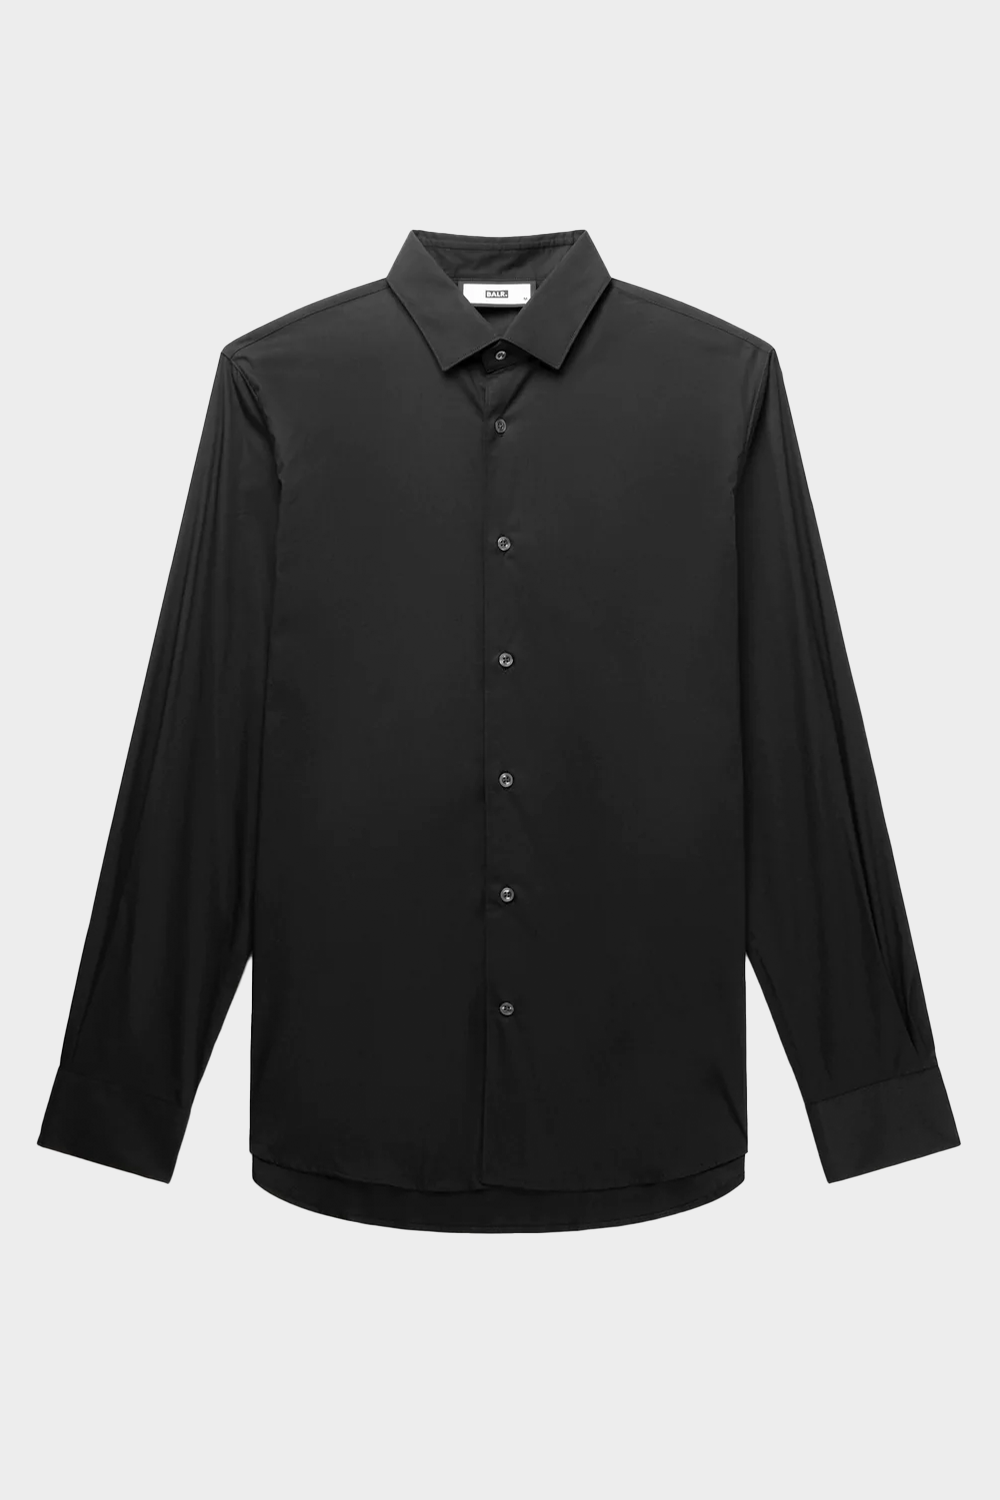 חולצה מכופתרת לגברים בצבע שחור BALR Vendome online | ונדום .